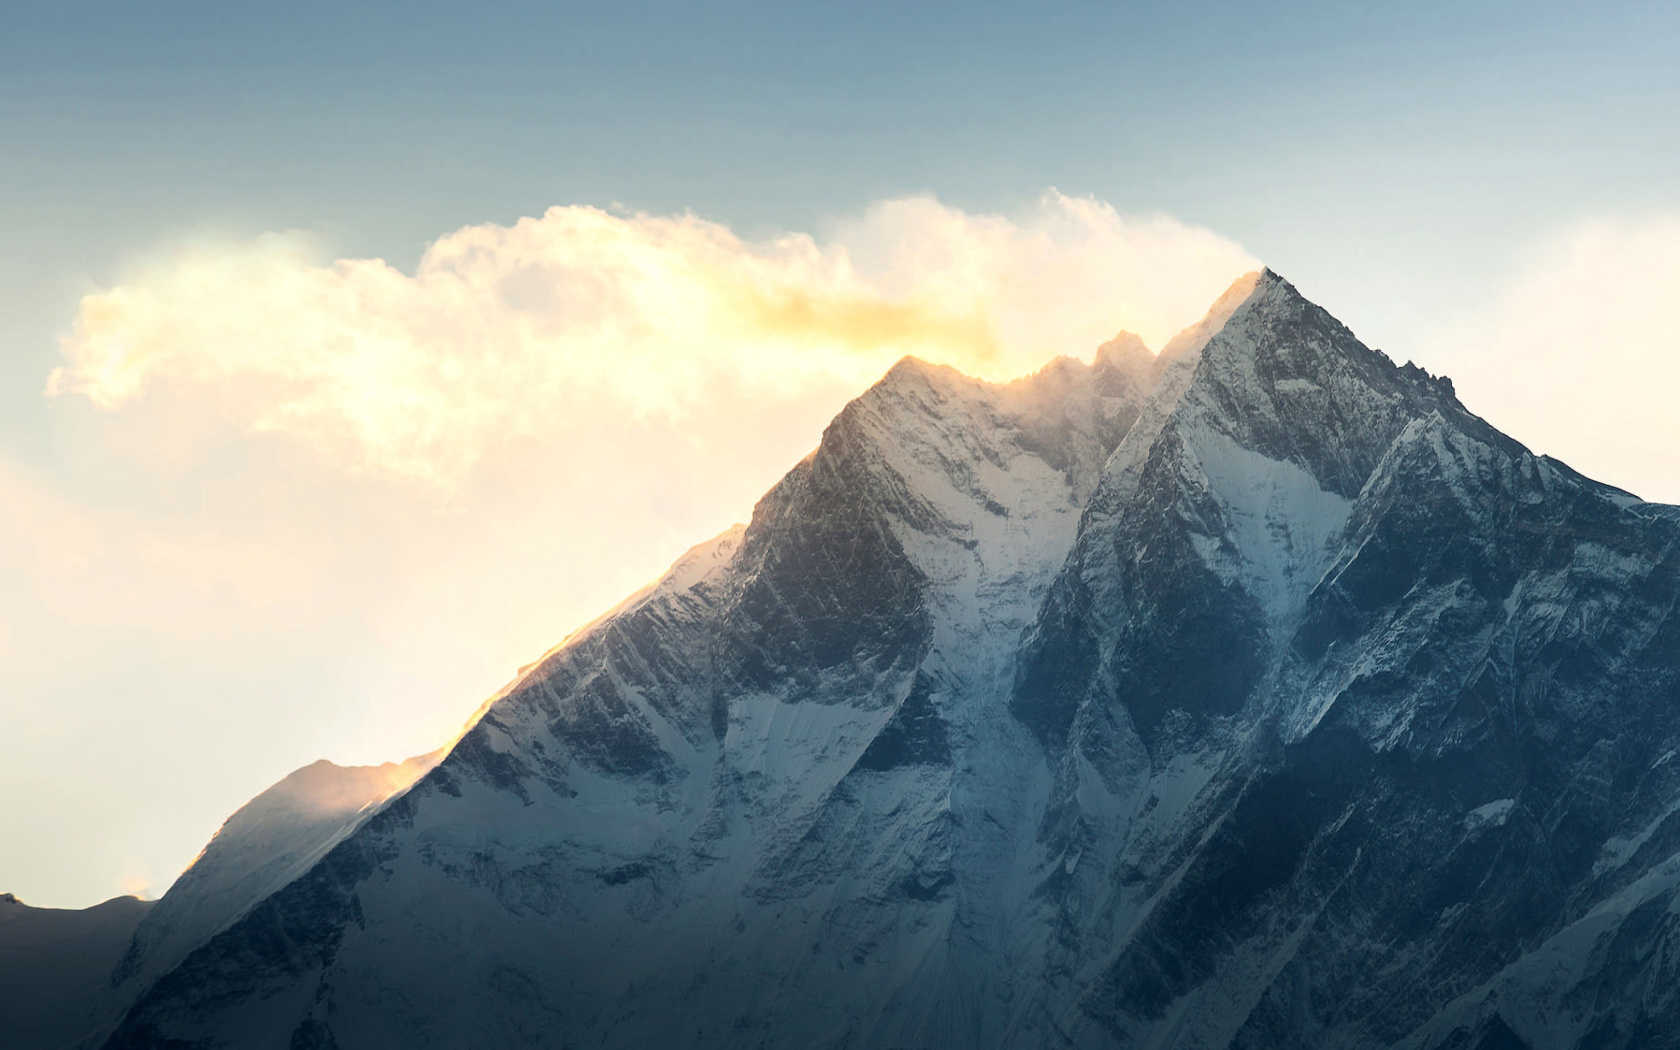 Обои Everest in Nepal 1680x1050